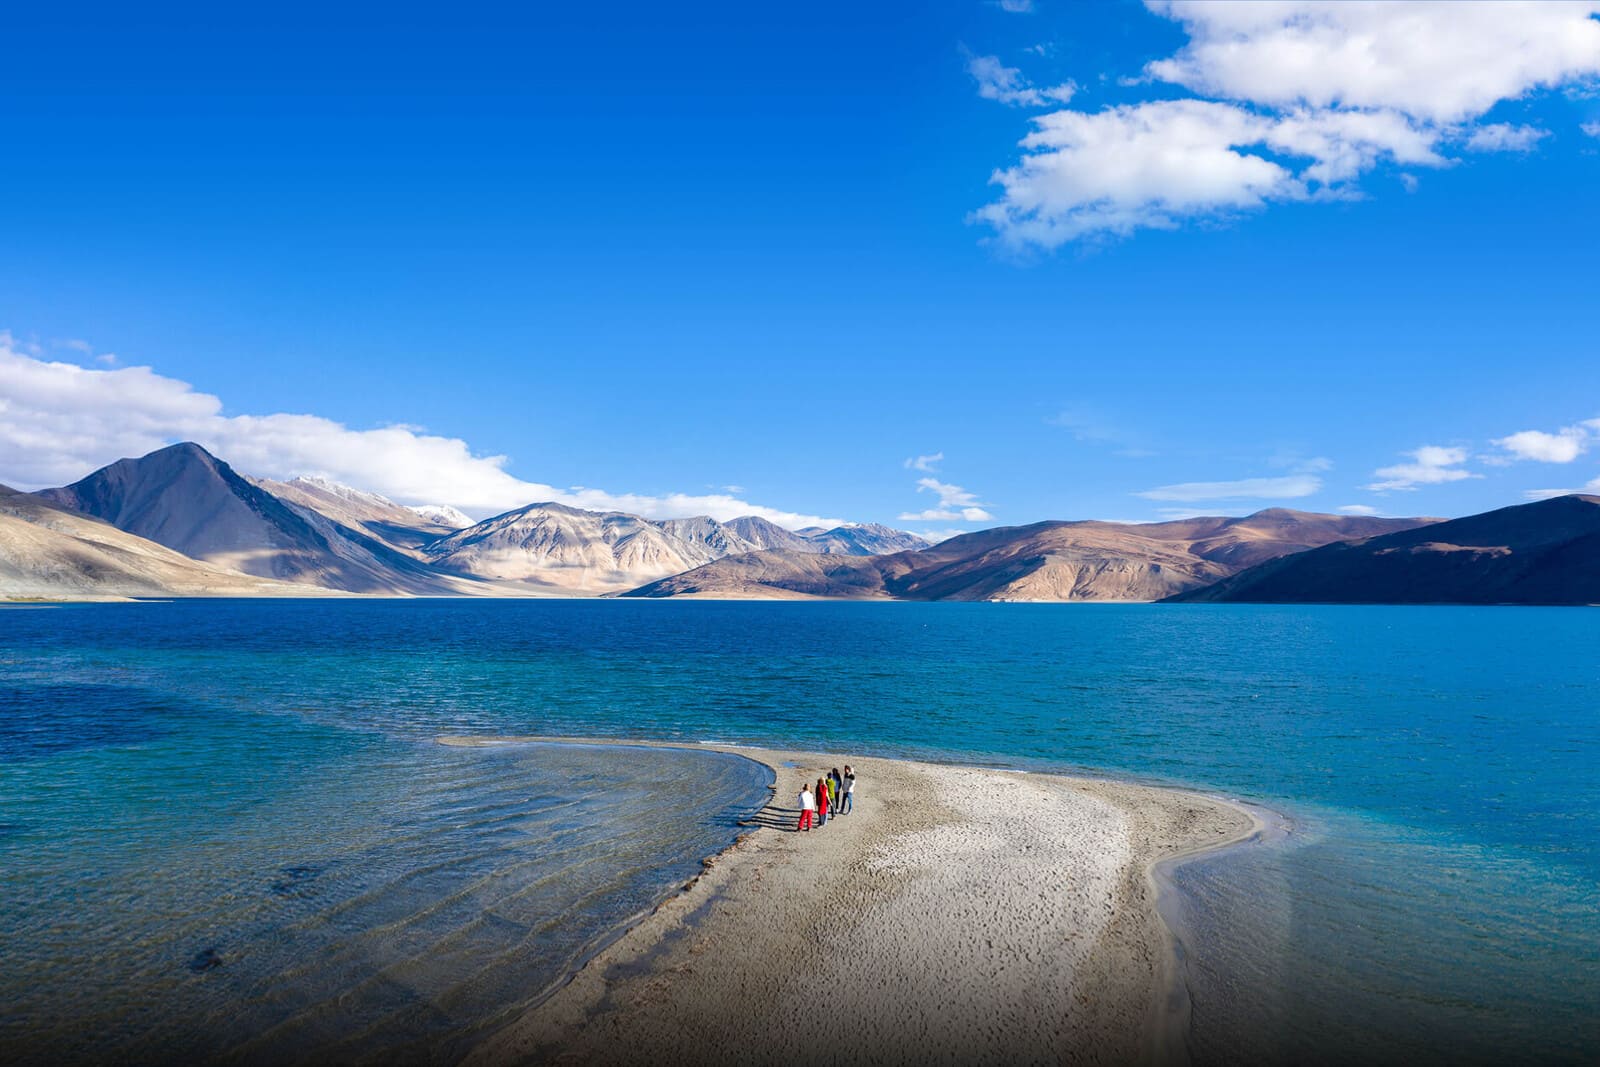 Kinh nghiệm du lịch Ladakh vào mùa hè chi tiết từ A đến Z